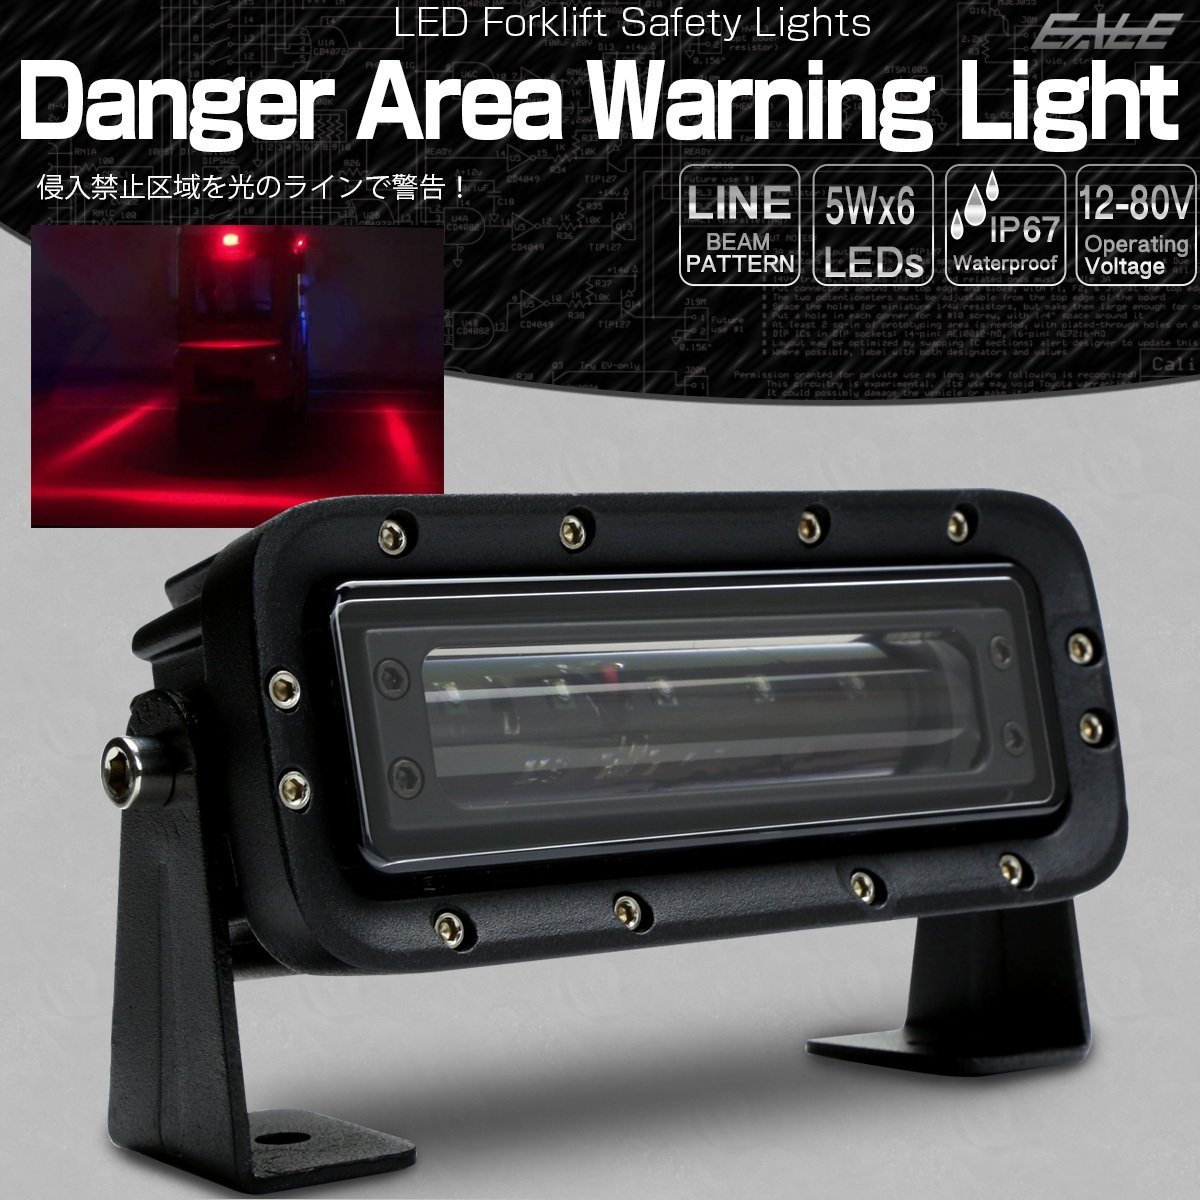 進入禁止区域 LED 警告灯 ブルー ゾーン ビームライト フォークリフト レッカー車 重機の安全管理に 作業灯 12V-80V P-454-B_こちらはブルーの出品です。